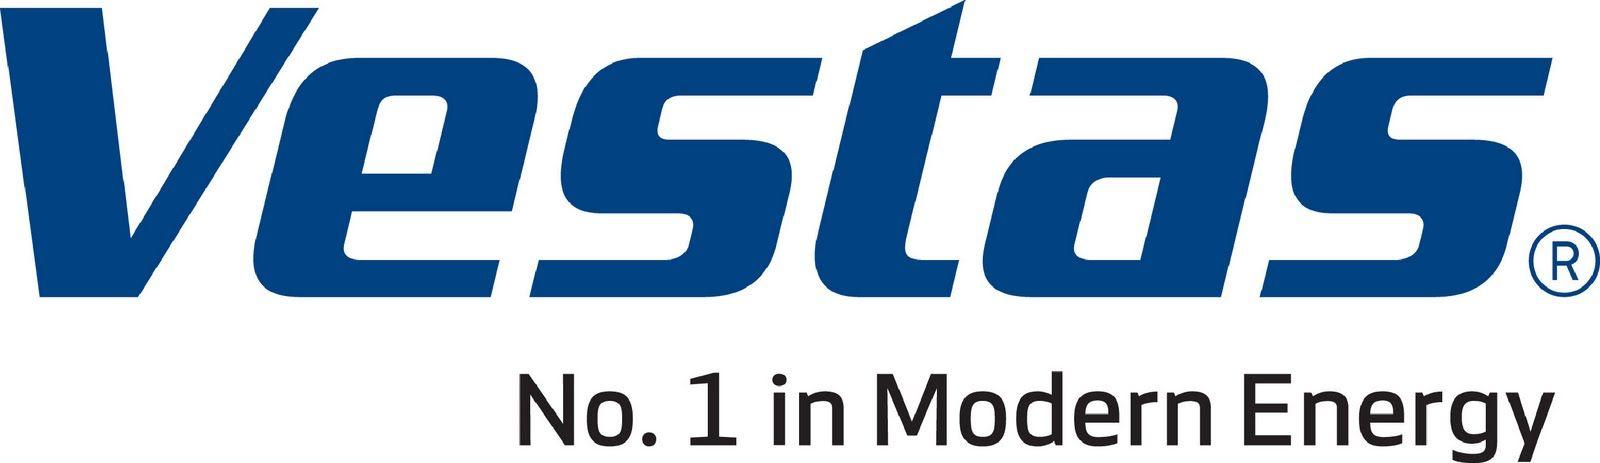 Vestas Logo - Vestas Wind Systems « Logos & Brands Directory